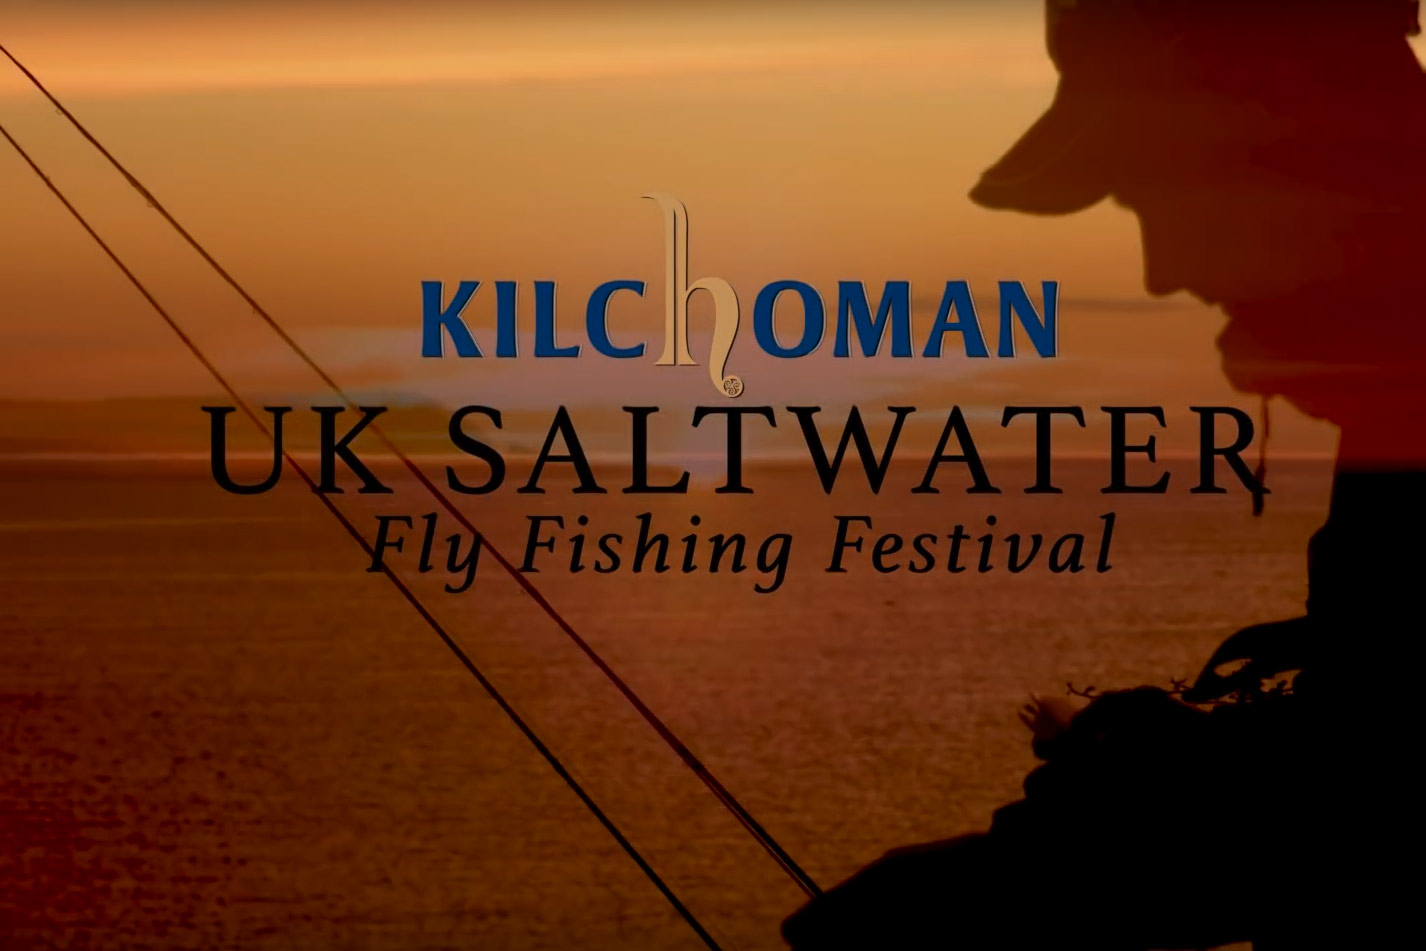 2016 - Kilchoman UK Saltwater Fly Fishing Festival, &quot;The Salt&quot;